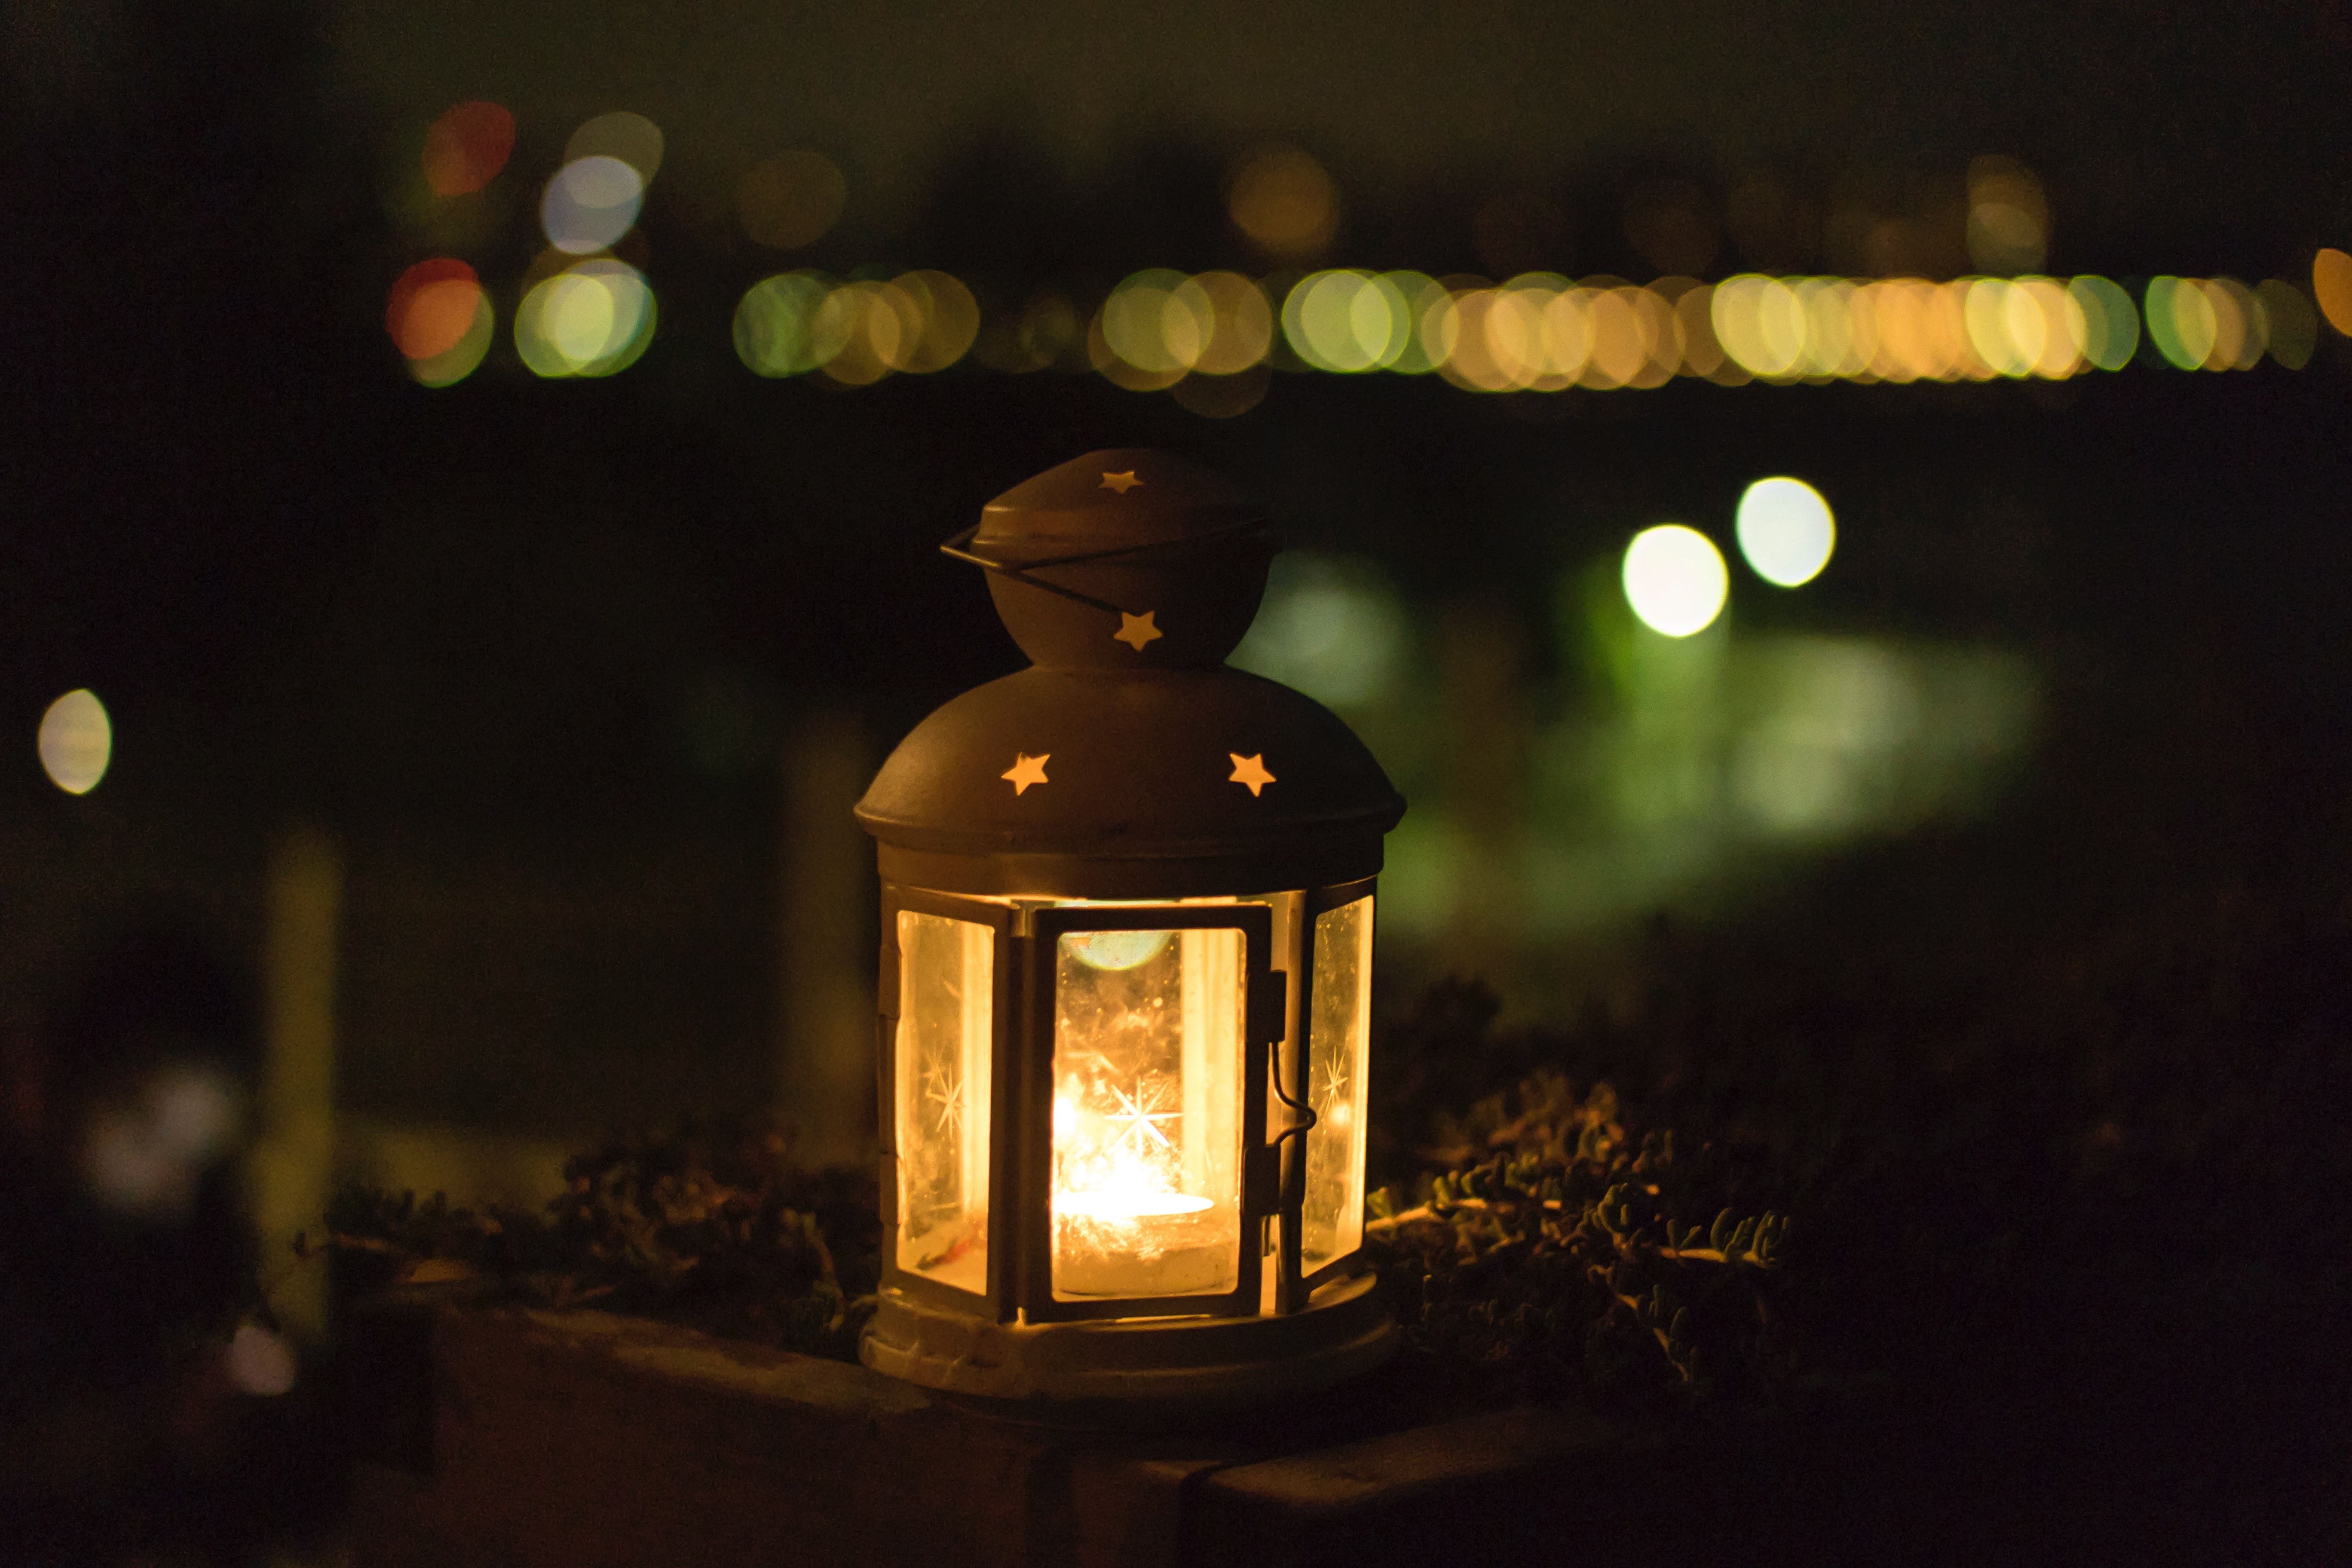 Free photo: Yellow Lantern during Night, Lantern, Light